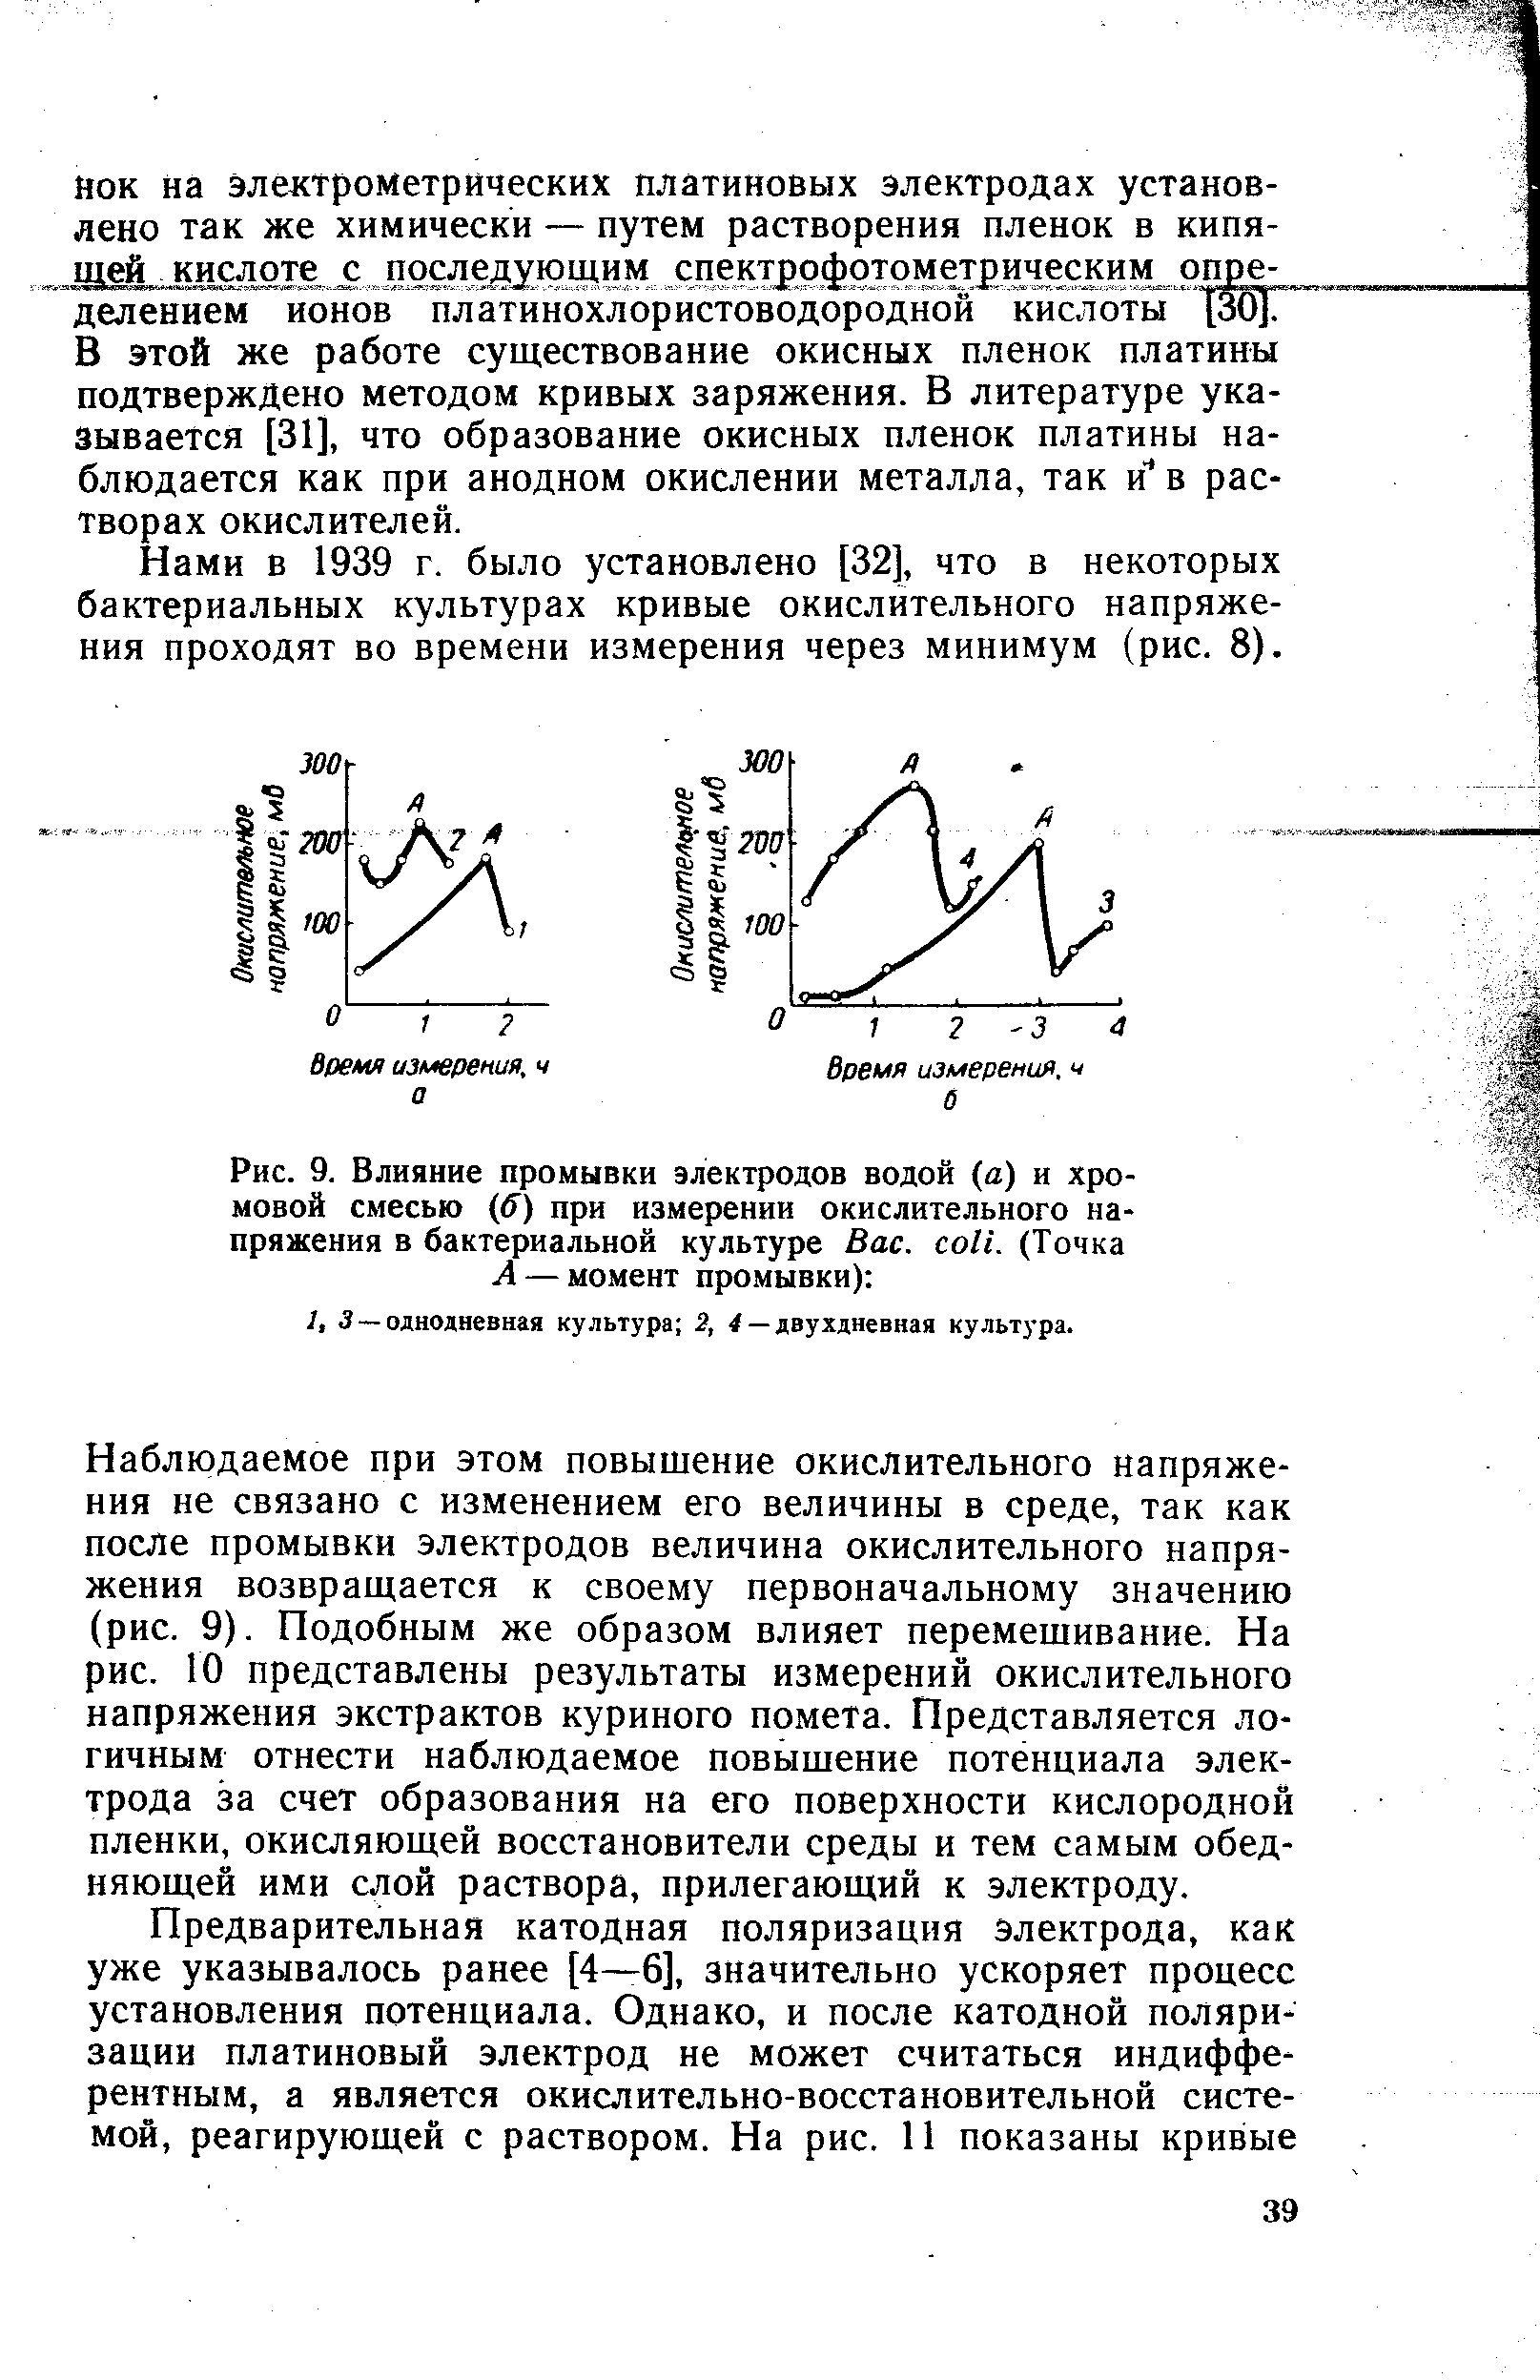 Нами в 1939 г. было установлено [32], что в некоторых бактериальных культурах кривые окислительного напряжения проходят во времени измерения через минимум (рис. 8).